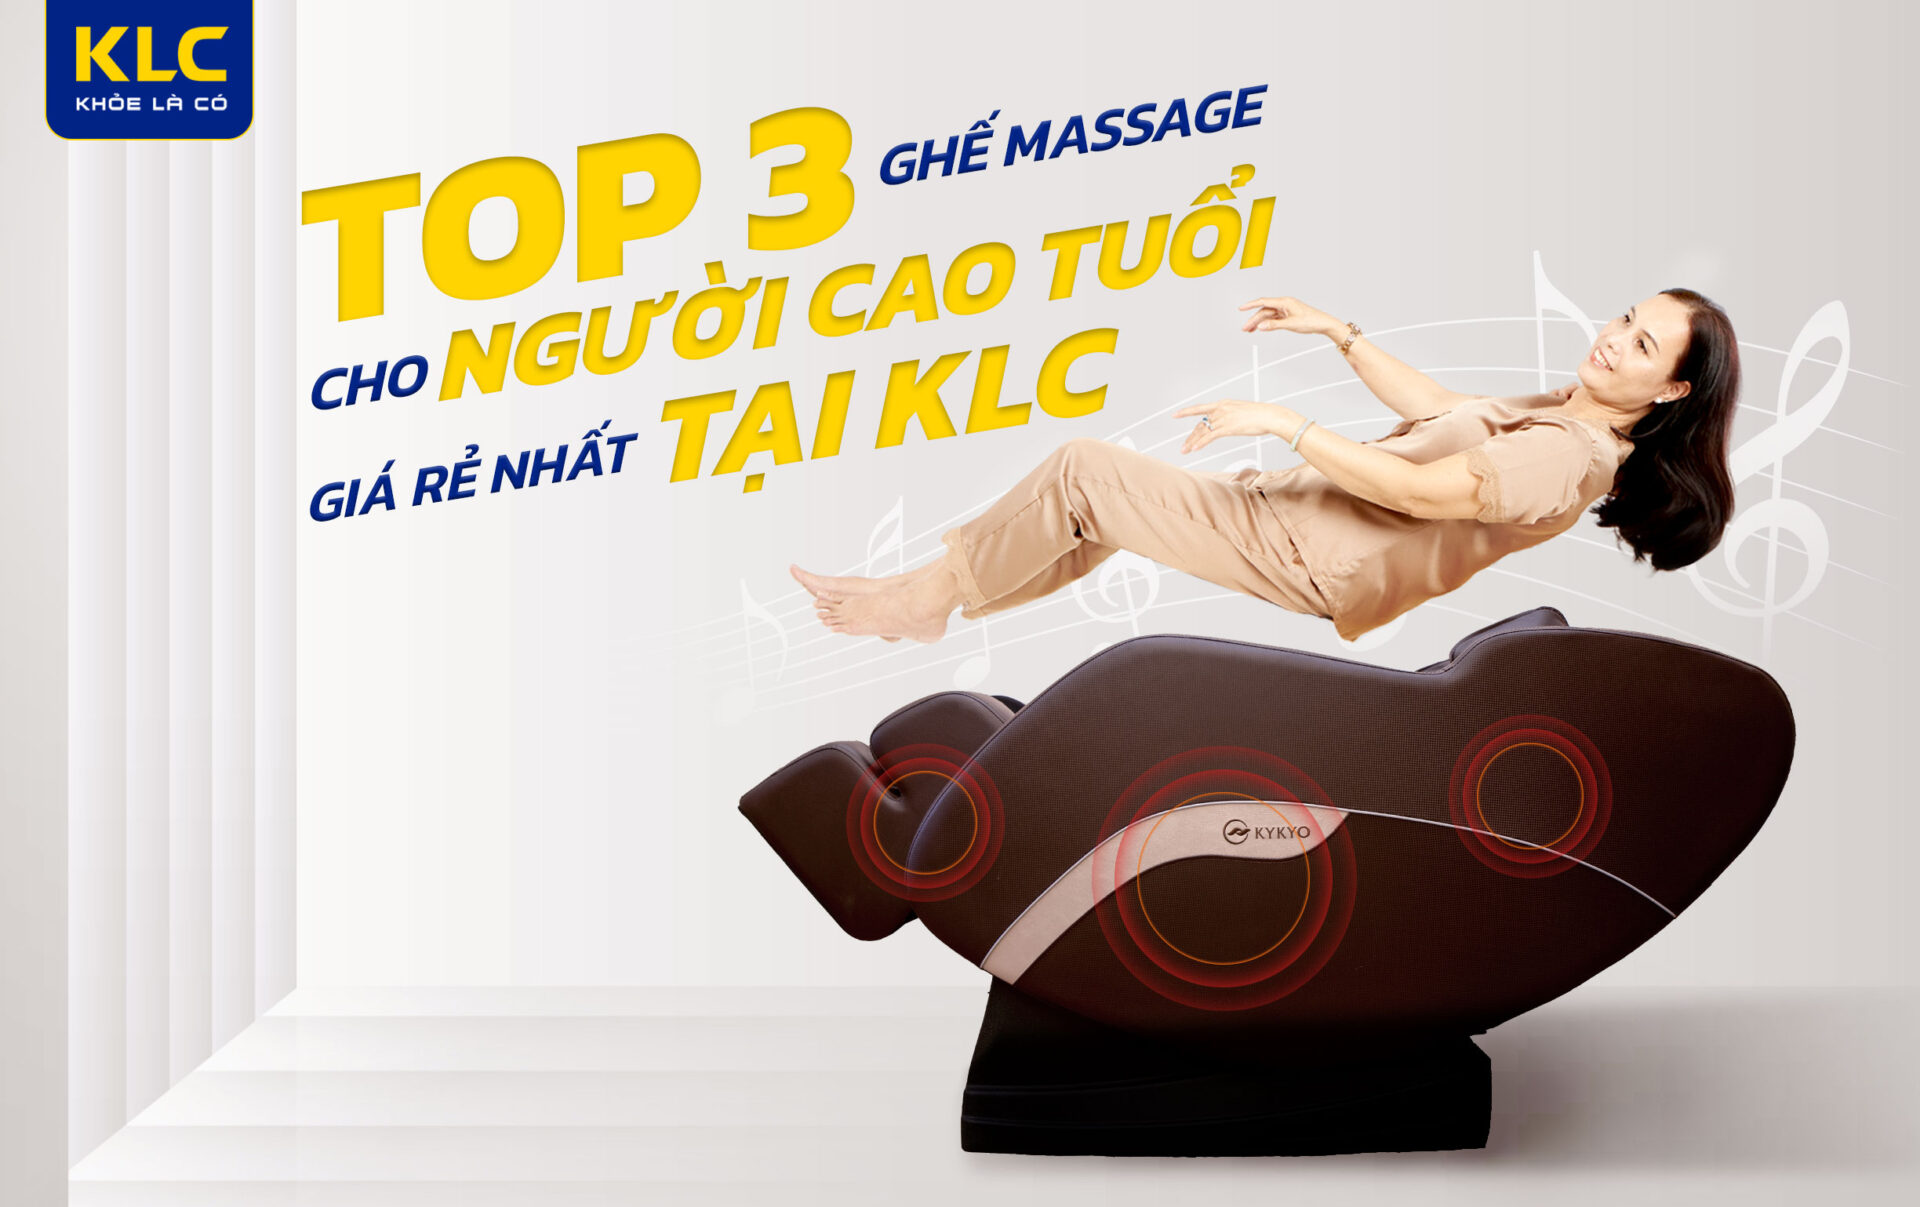 Top 3 Ghế Massage Cho Người Cao Tuổi Giá Rẻ Nhất Klc